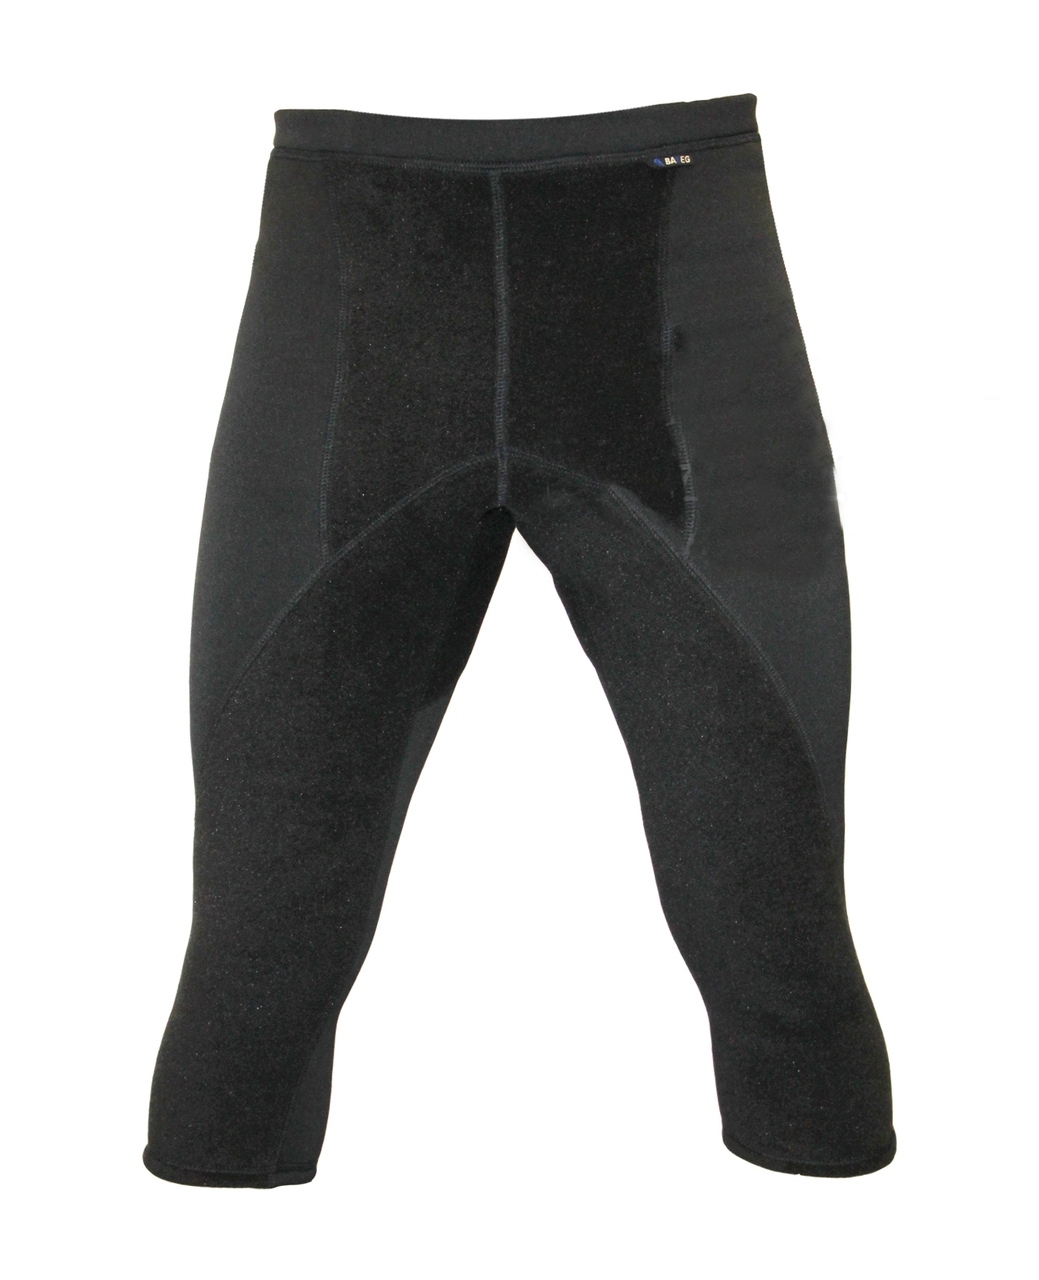 Термобелье Polartec (бриджи) из ткани power stretch - купить брюки Полартекв интернет-магазине R159